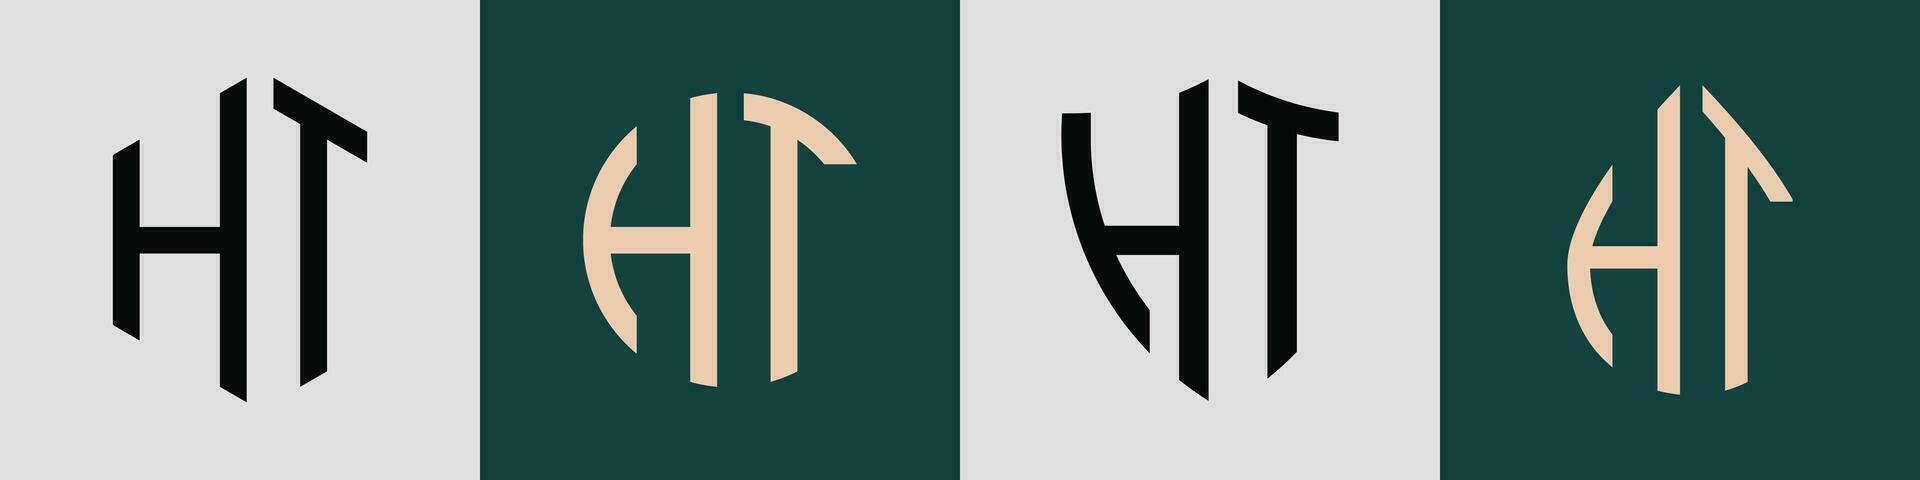 criativo simples inicial cartas ht logotipo desenhos pacote. vetor